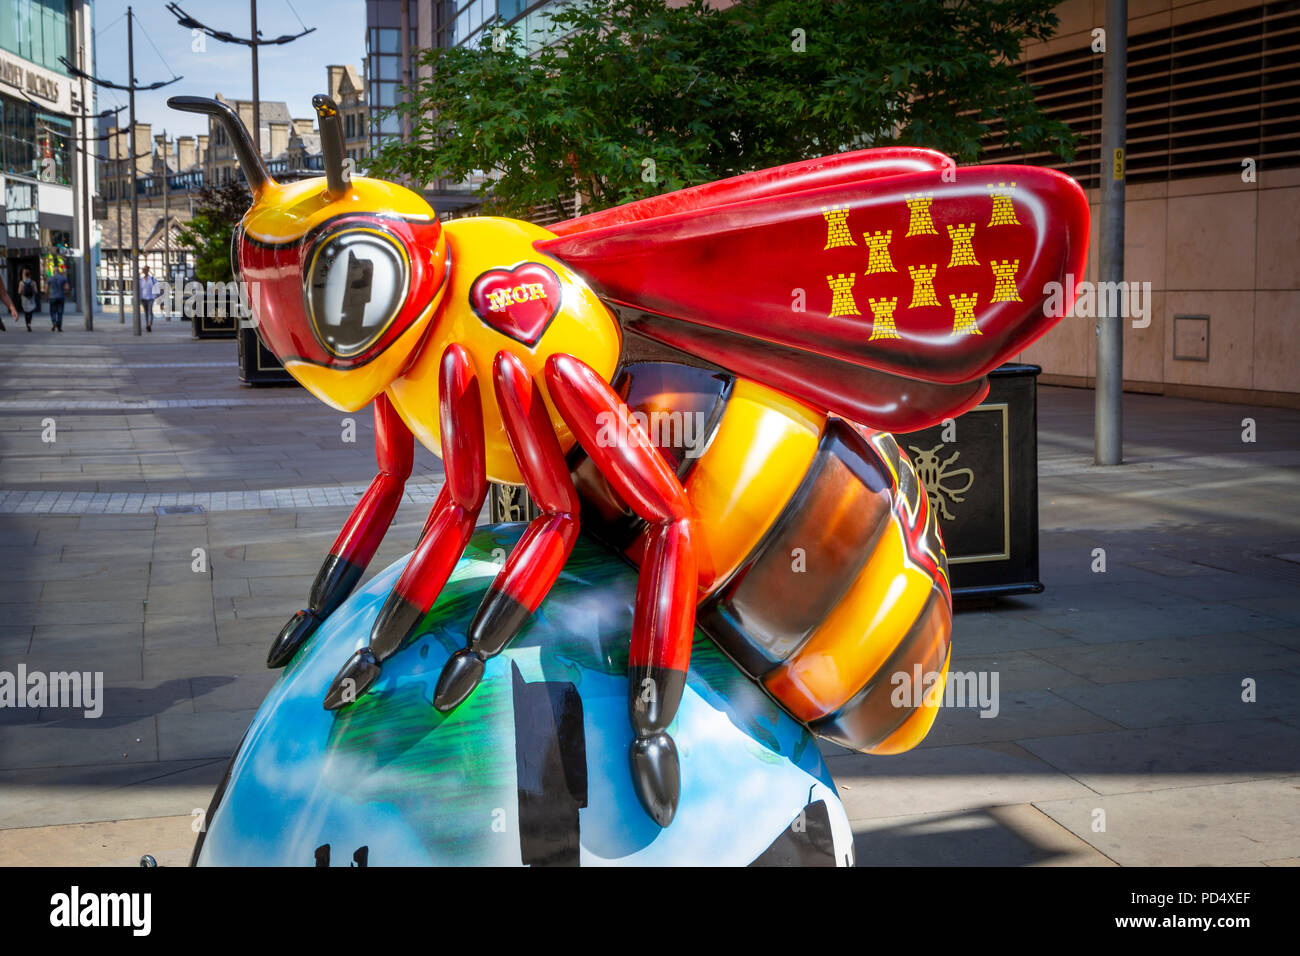 - Pekr-Inkversion SuperBee Adam. Abeille dans la ville, l'événement d'art public dans la ville de Manchester. Plus de 100 abeilles sur une piste de plaisir en famille. Banque D'Images